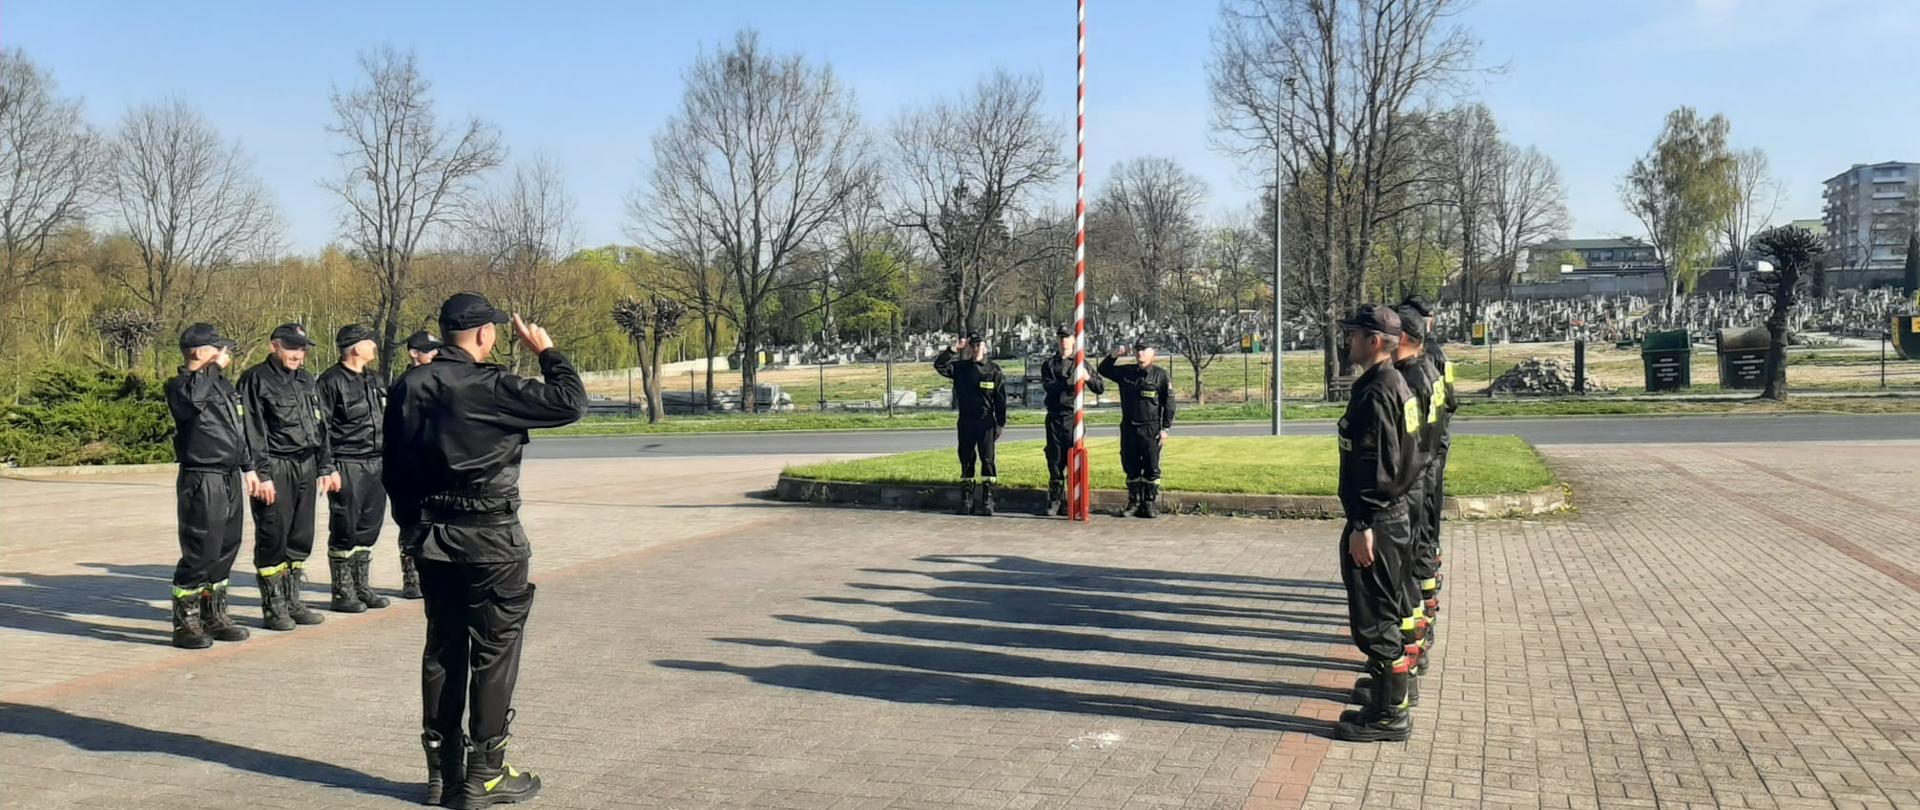 Na zdjęciu widać 18-stu strażaków. 14-stu z nich stoi w dwóch 7-mio osobowych szeregach, zwróconych twarzami do siebie. Między nimi znajduje się strażak (dowódca) zwrócony twarzą do masztu z flagą znajdującym się na przeciw niego. Flagę polski na maszt wciąga 3 strażaków.